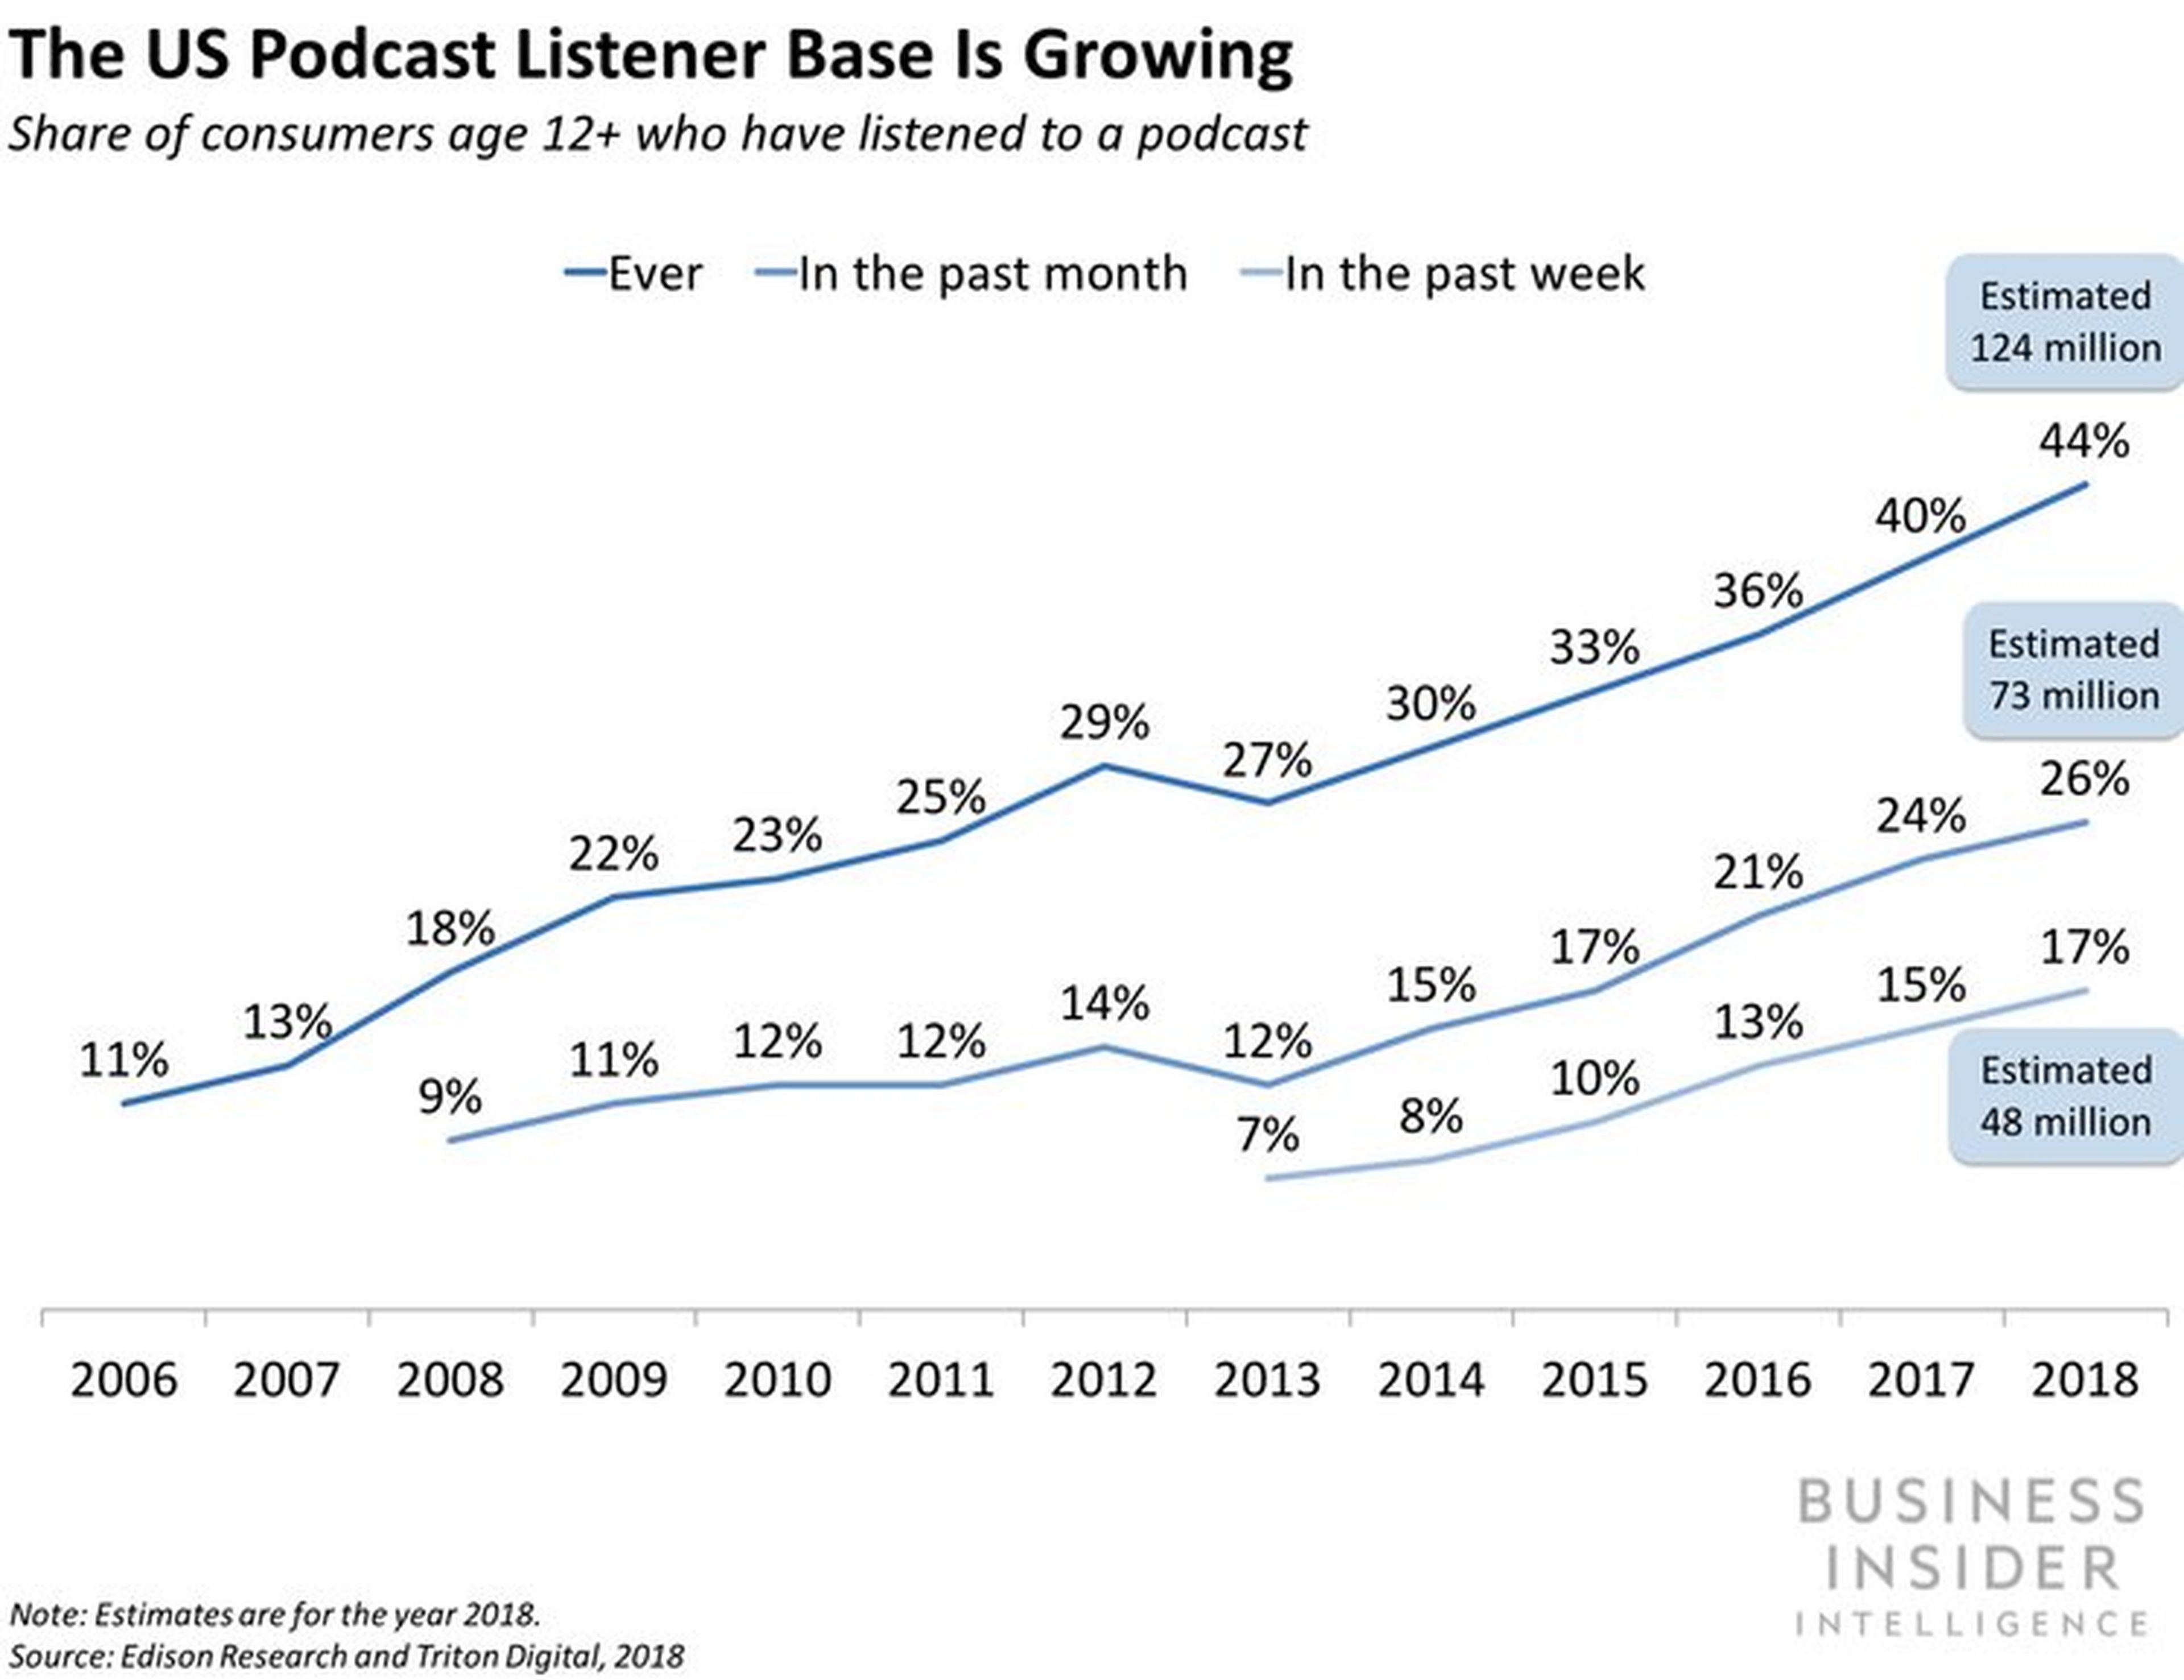 Audiencias de Podcast en EE.UU.: porcentaje de consumidores mayores de 12 años que han escuchado podcast alguna vez, en el último mes o en la última semana.